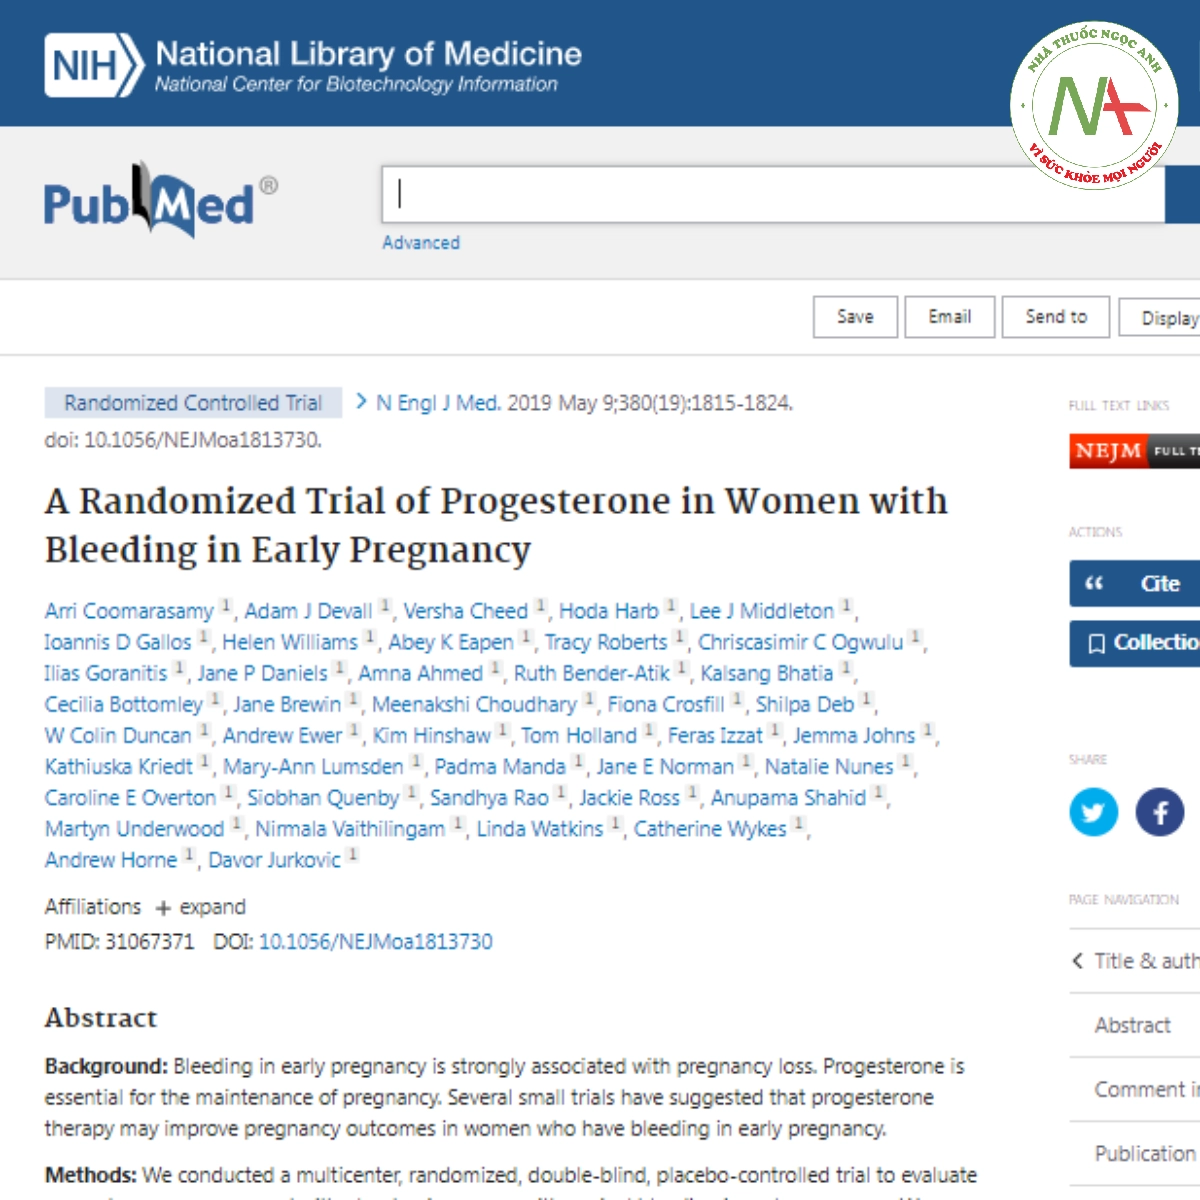 A Randomized Trial of Progesterone in Women with Bleeding in Early Pregnancy